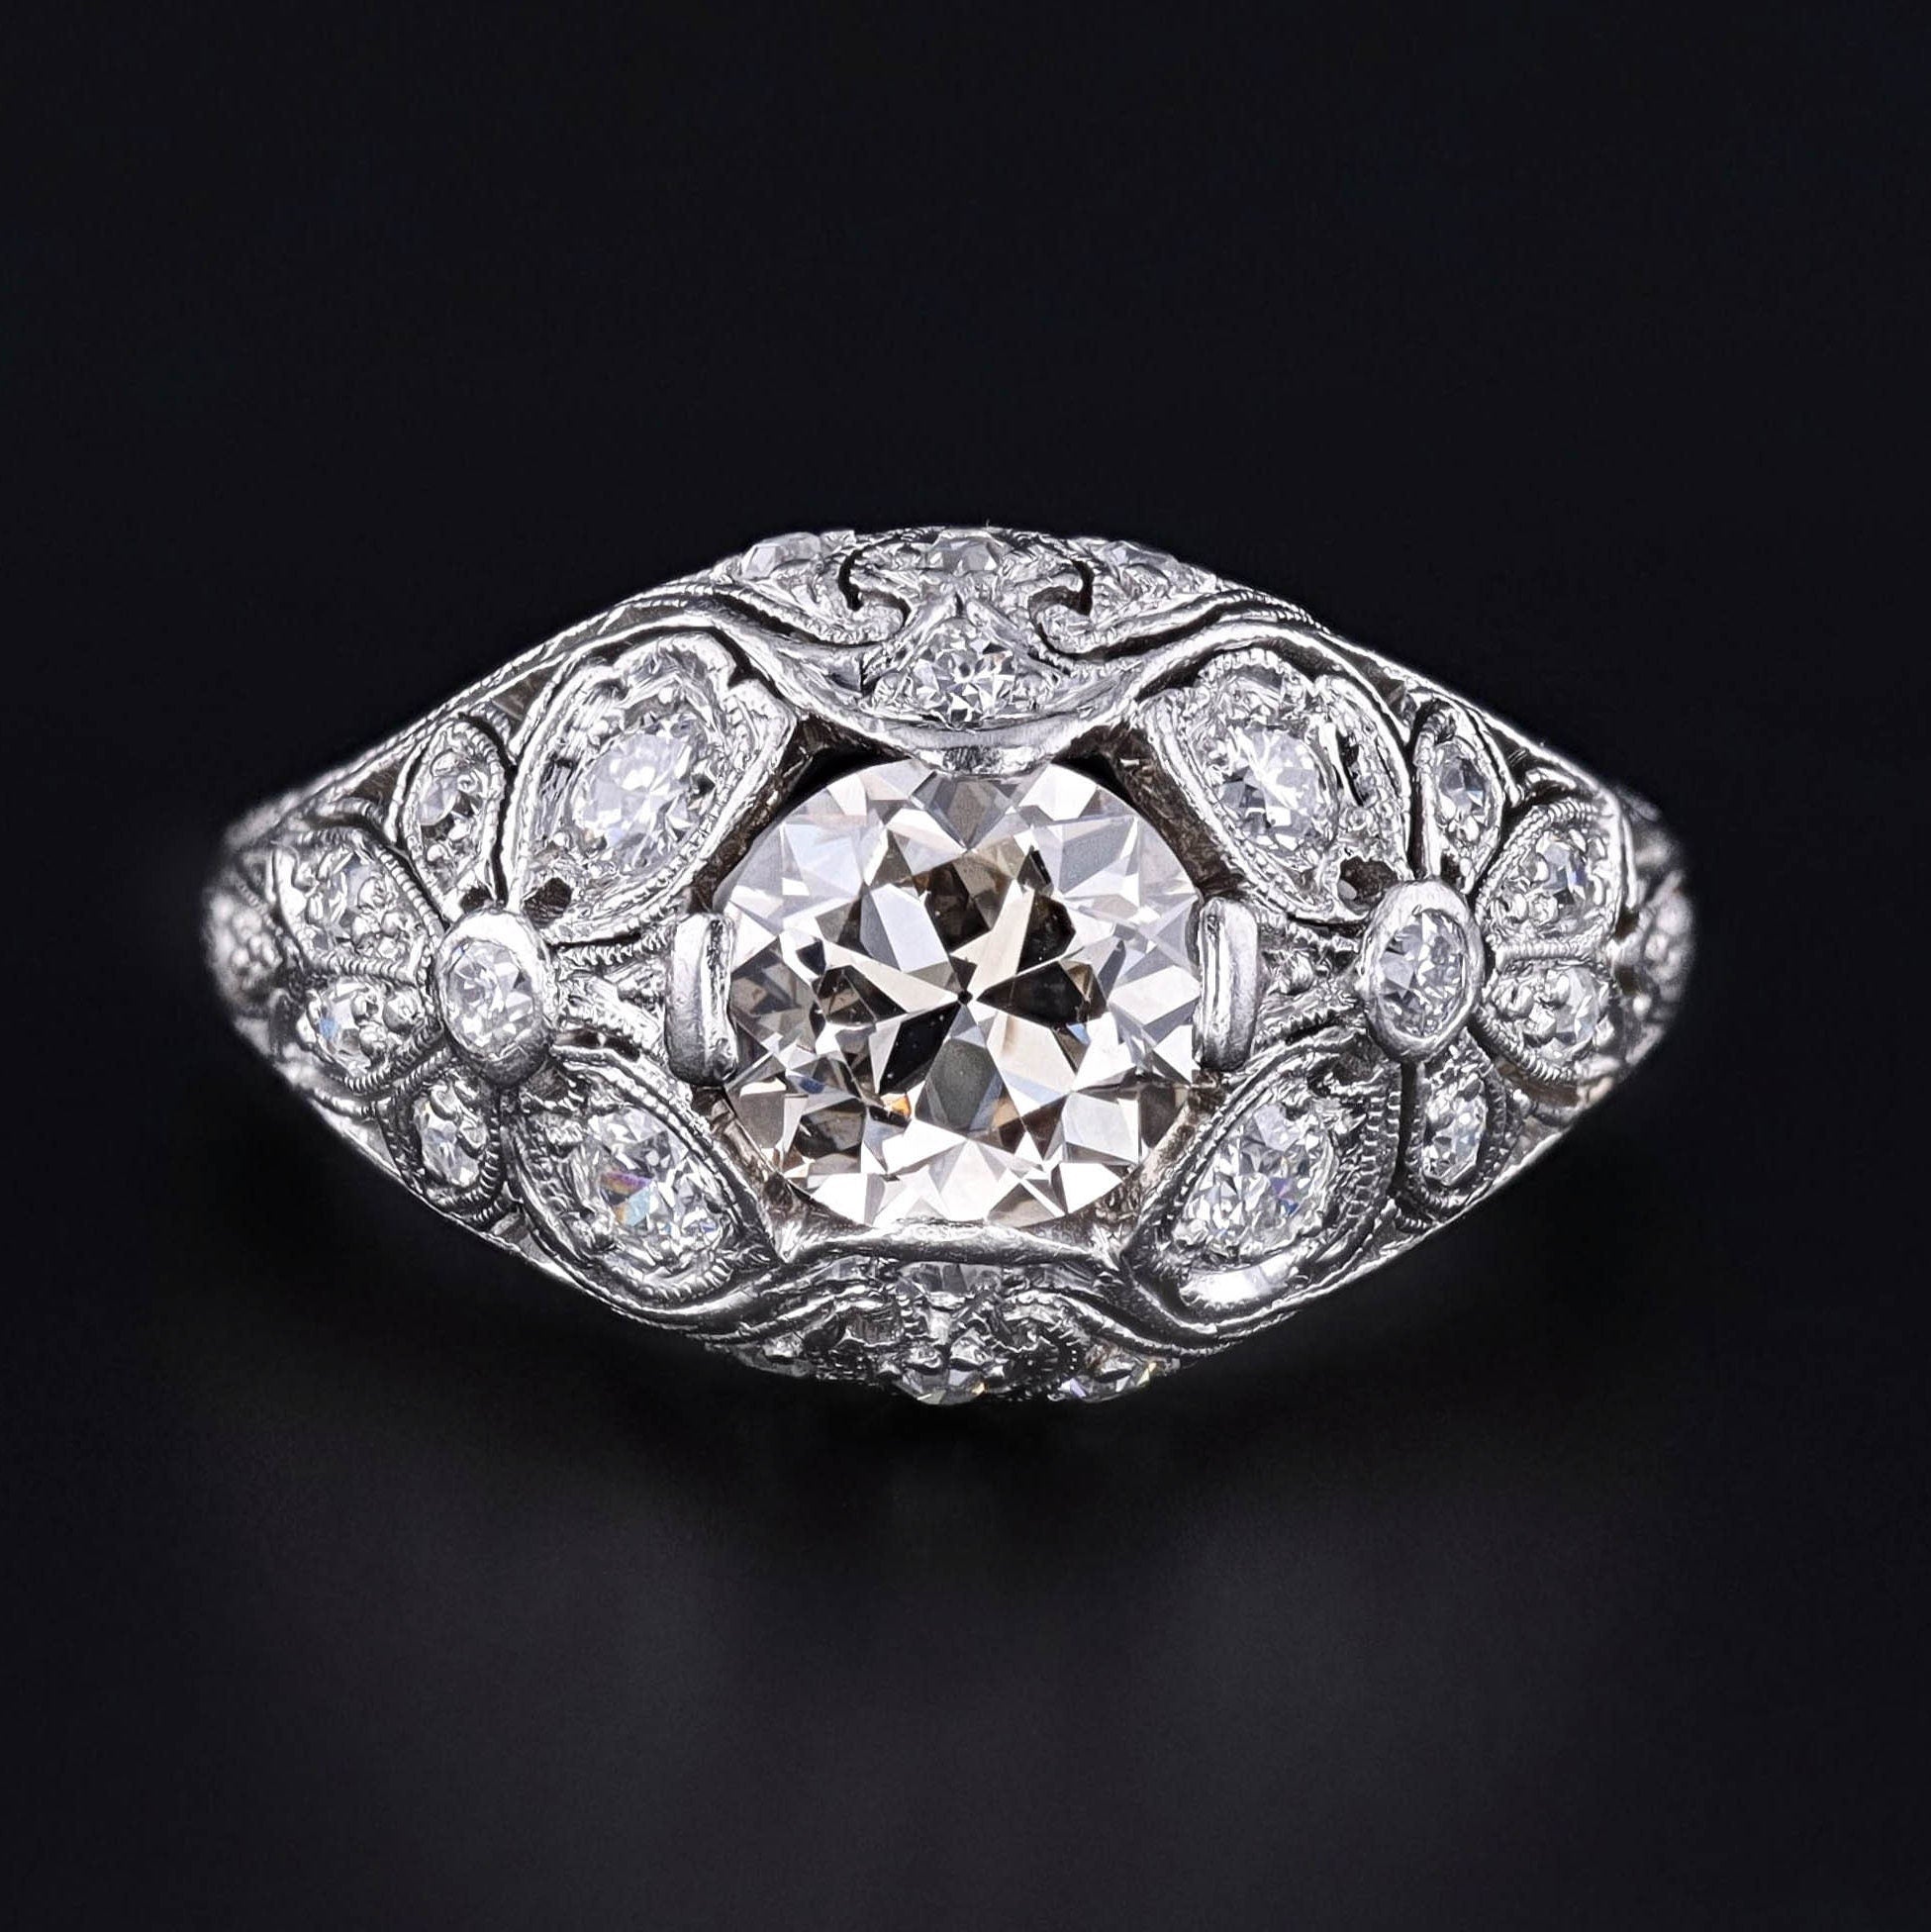 Antique Diamond Engagement Ring in Platinum